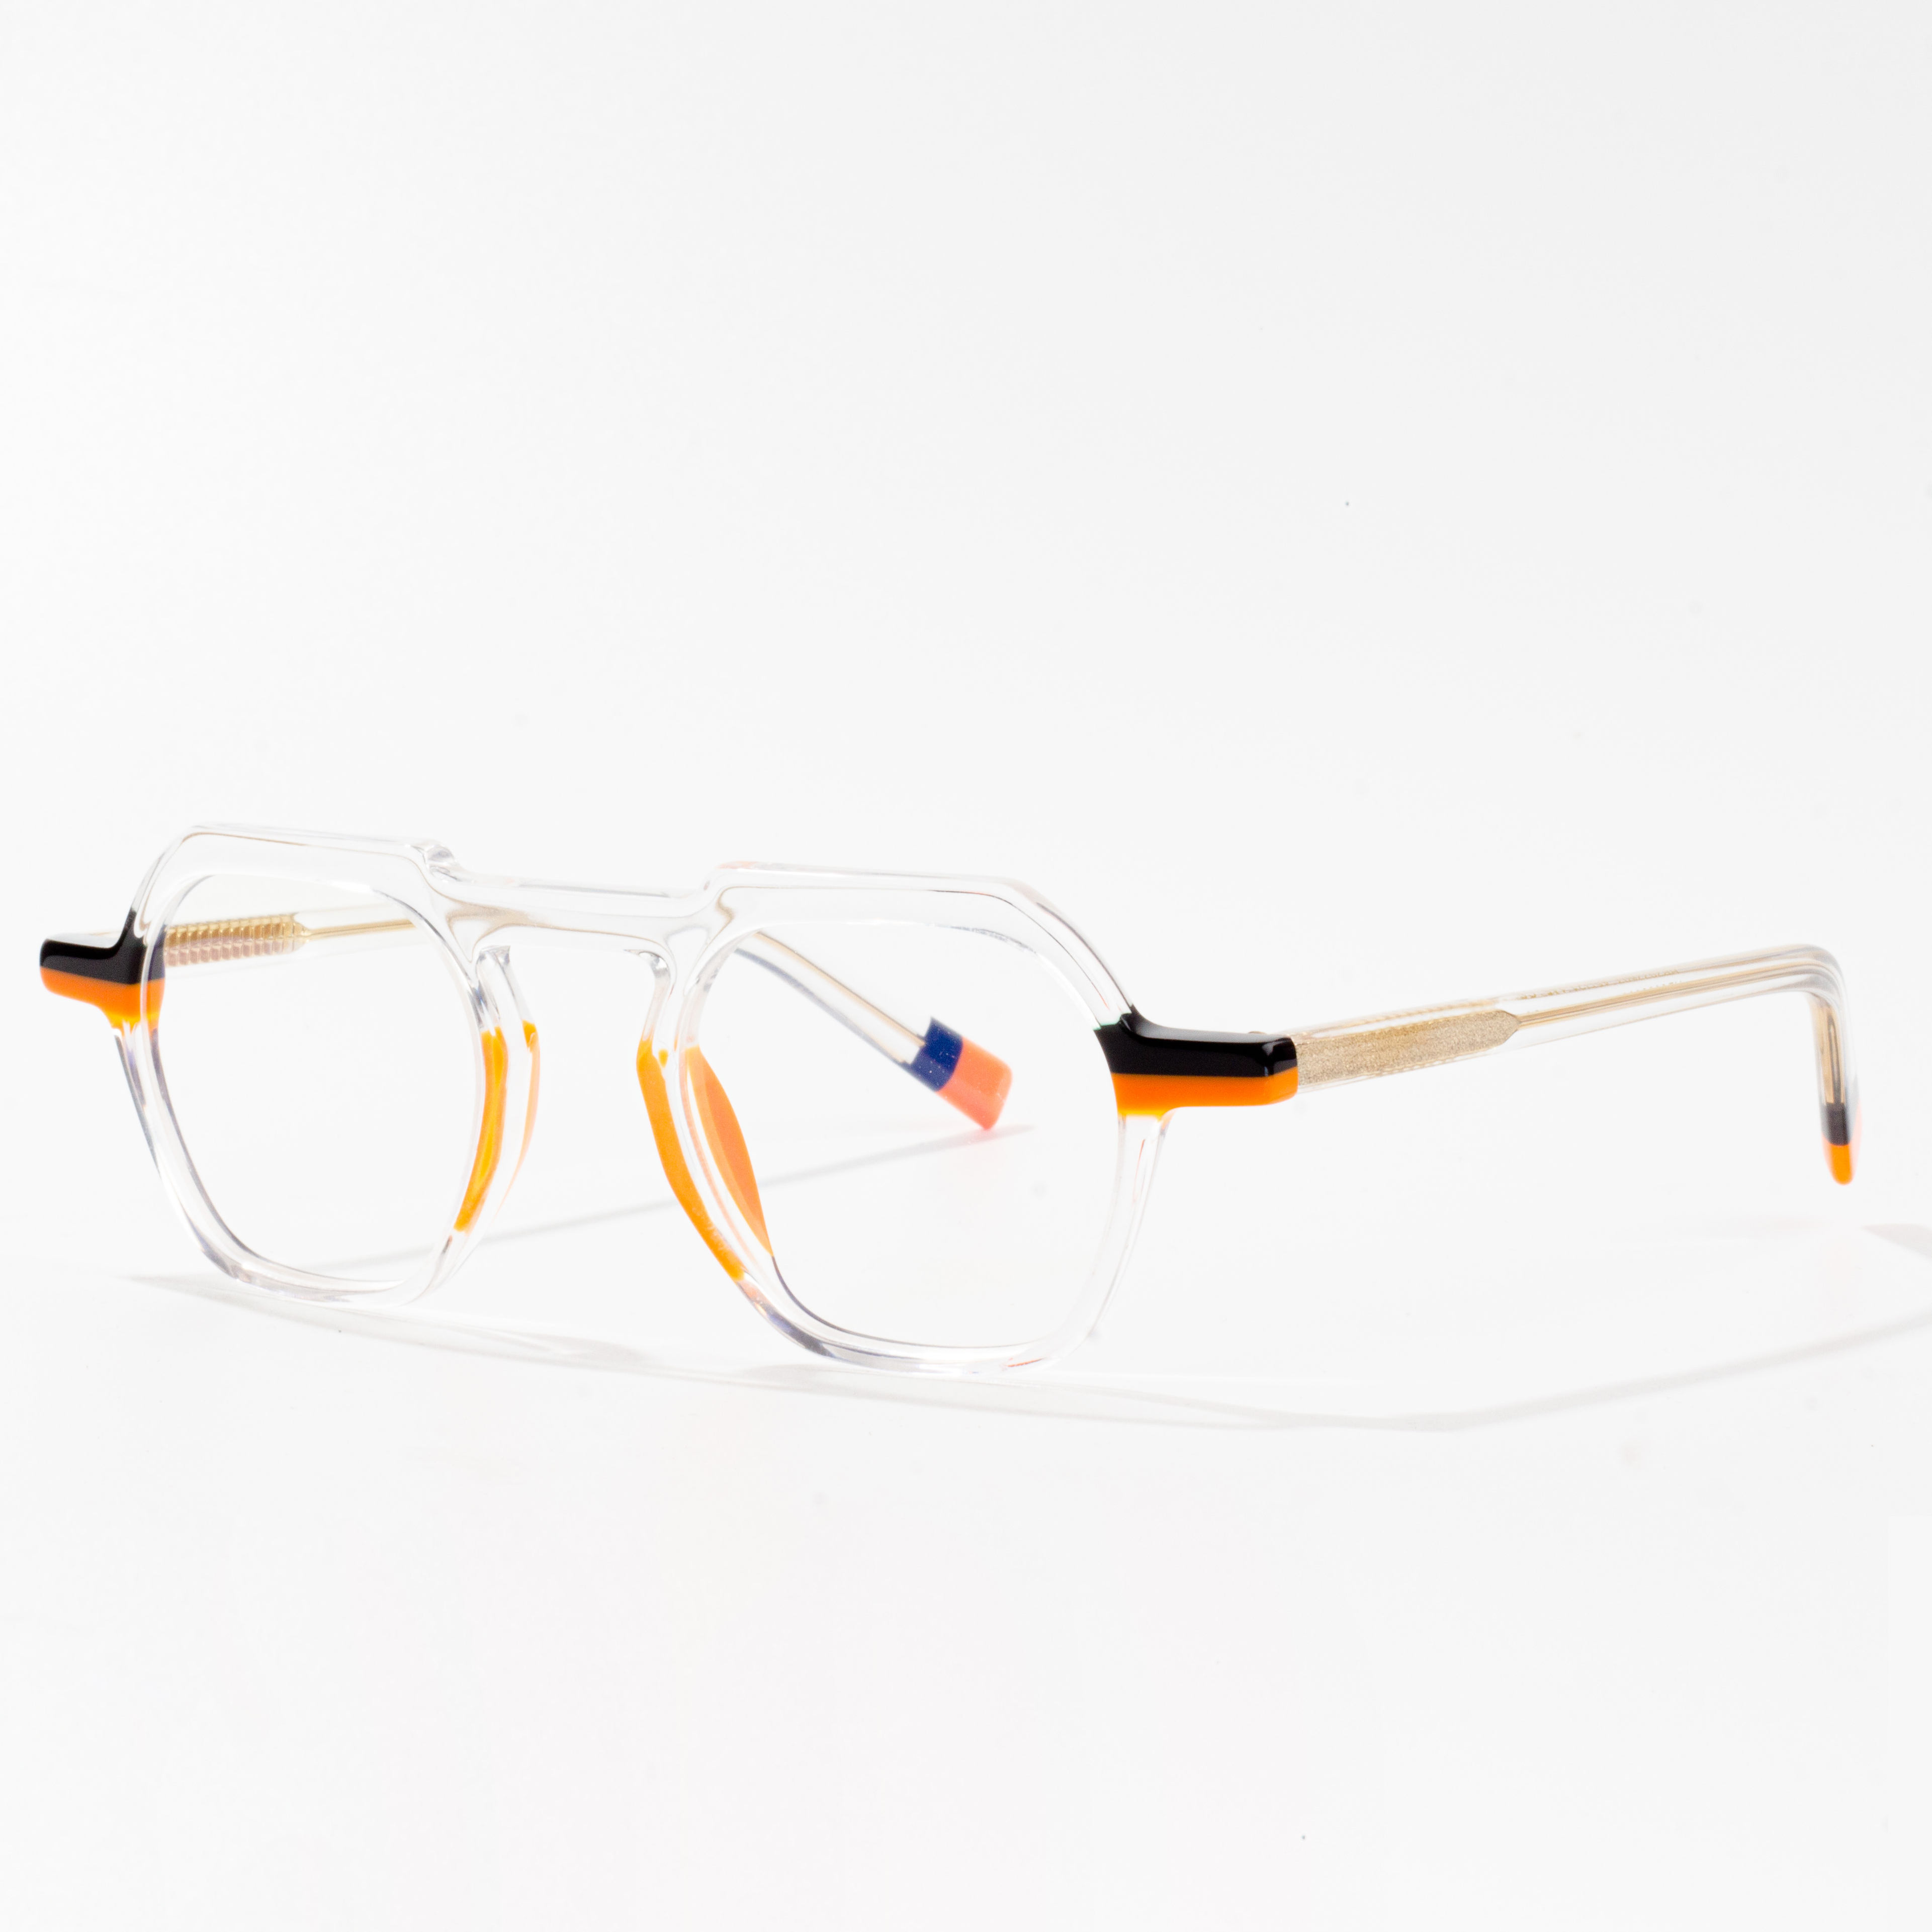 glasögonbågar i klar acetat